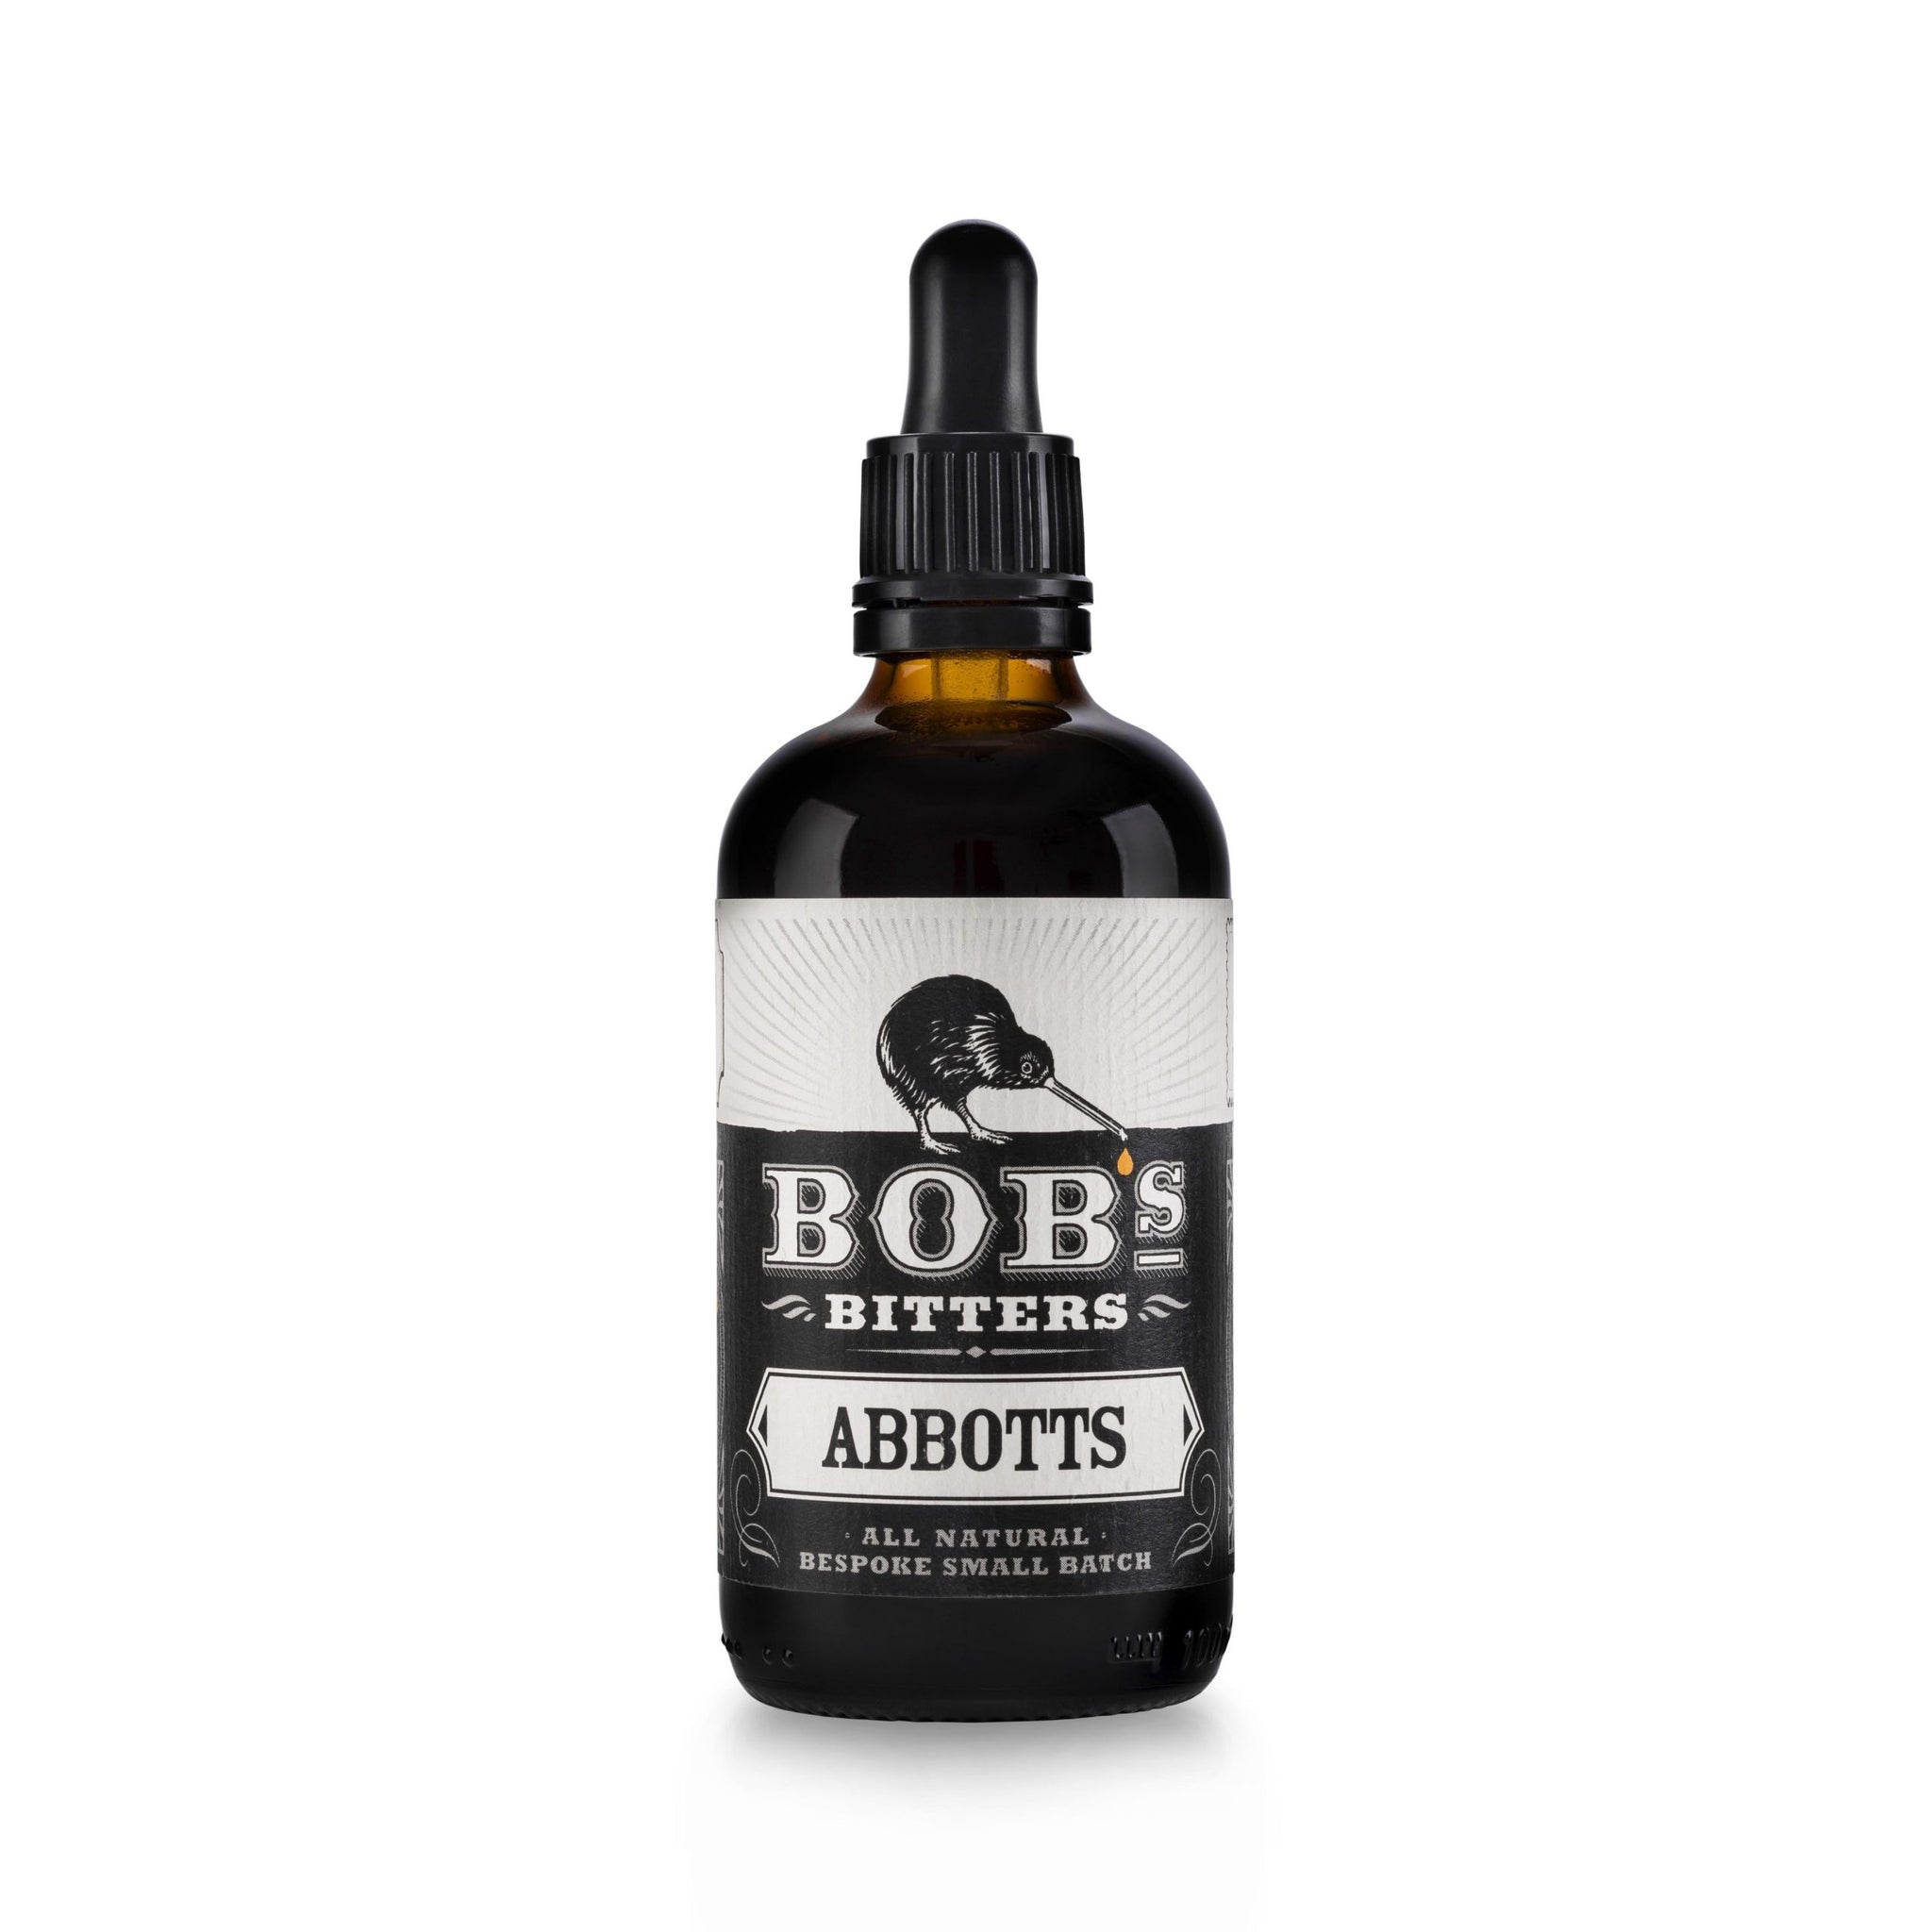 Bob's Abbott's Bitters - 10cl